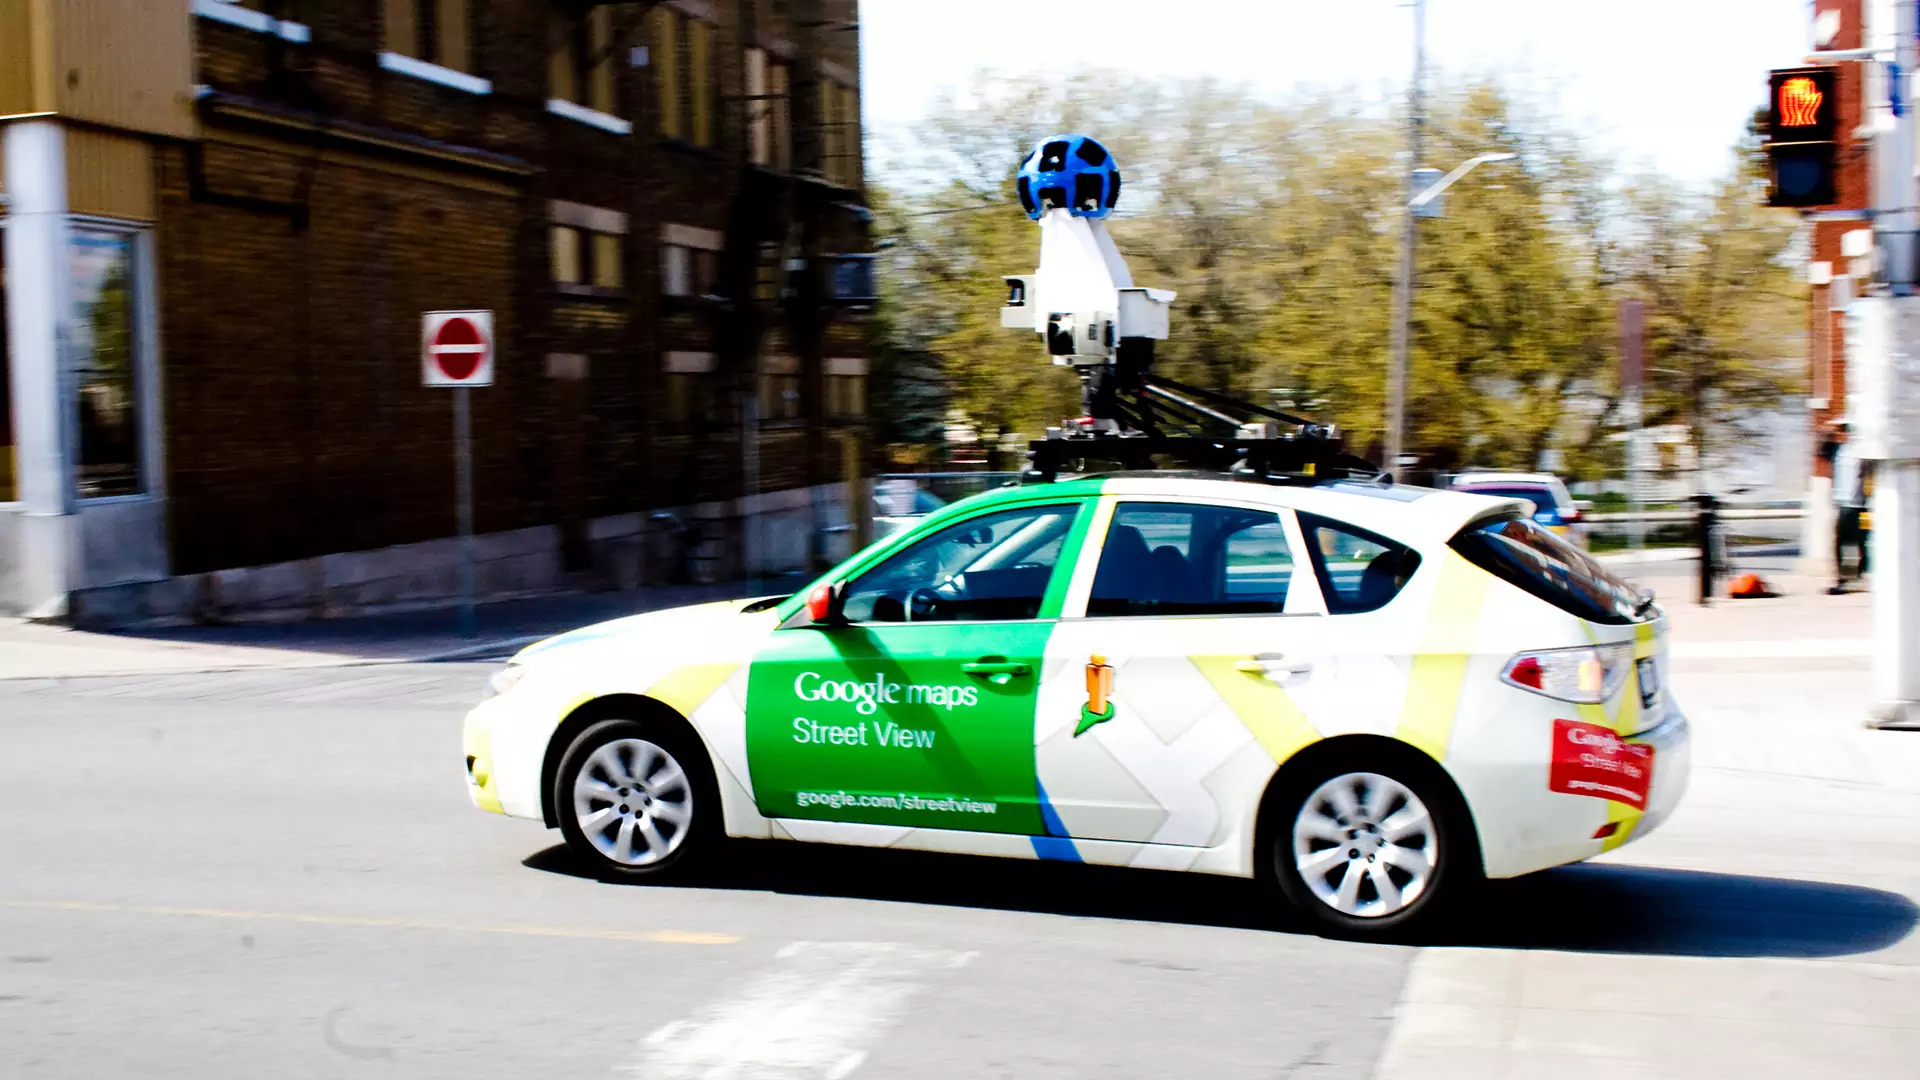 Samochody Google znów przyjadą fotografować Polskę. Znamy daty i listę miast